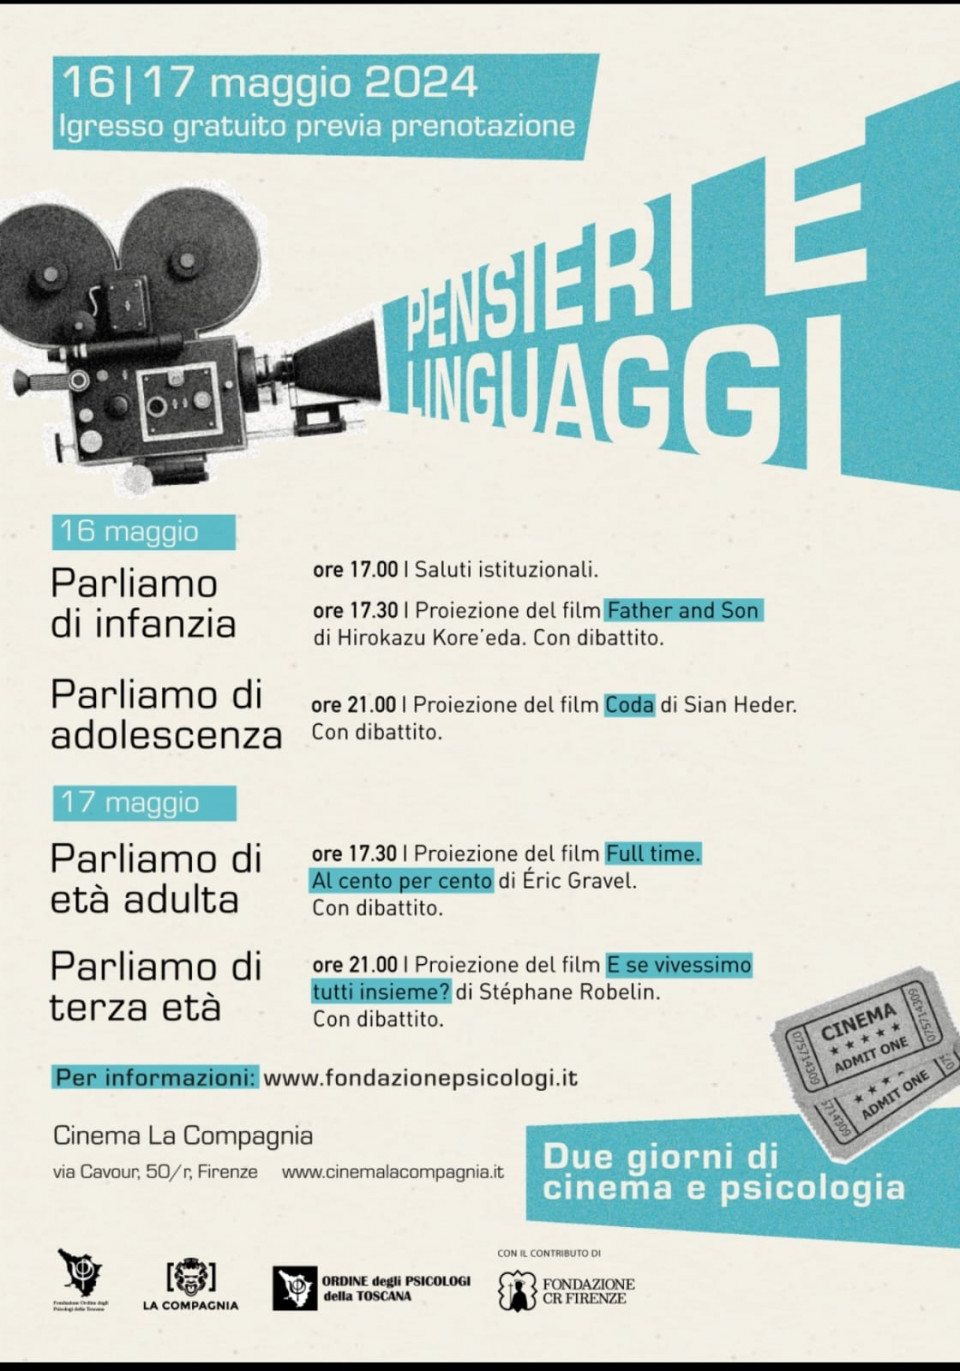 immagine articolo FILM FULL TIME AL CENTO PER CENTO 17.30 -  Cineforum - PENSIERI E LINGUAGGI - Cinema e psicologia